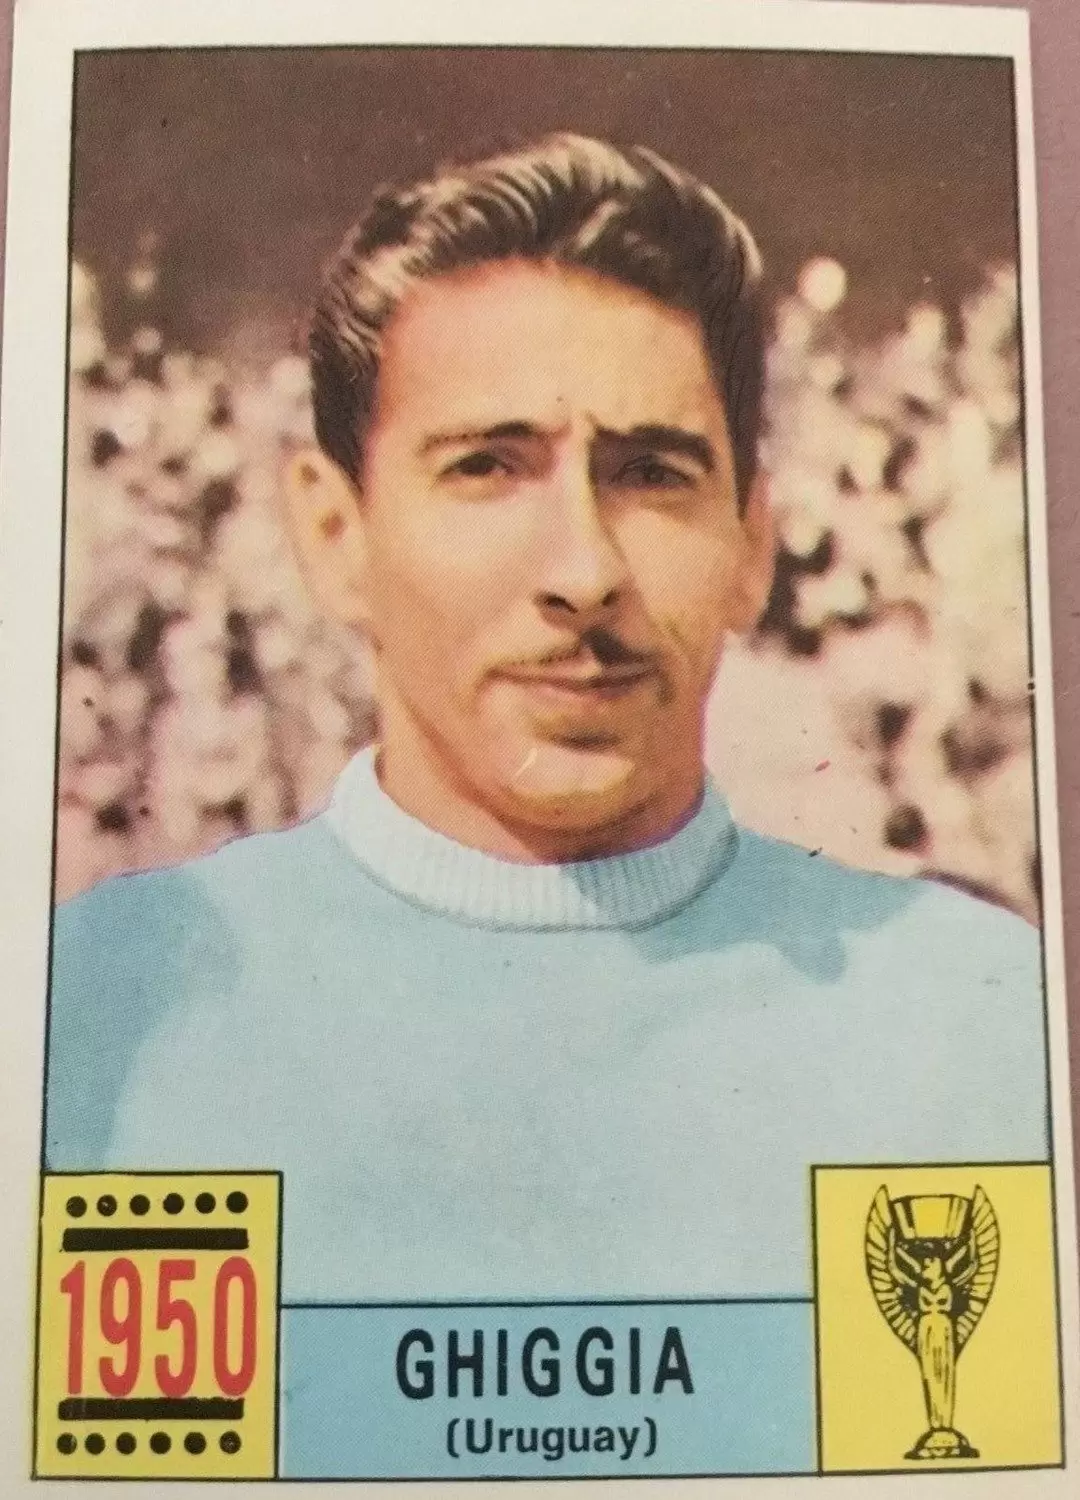 Mexico 70 World Cup - Ghiggia (Uruguay) - Uruguay 1950